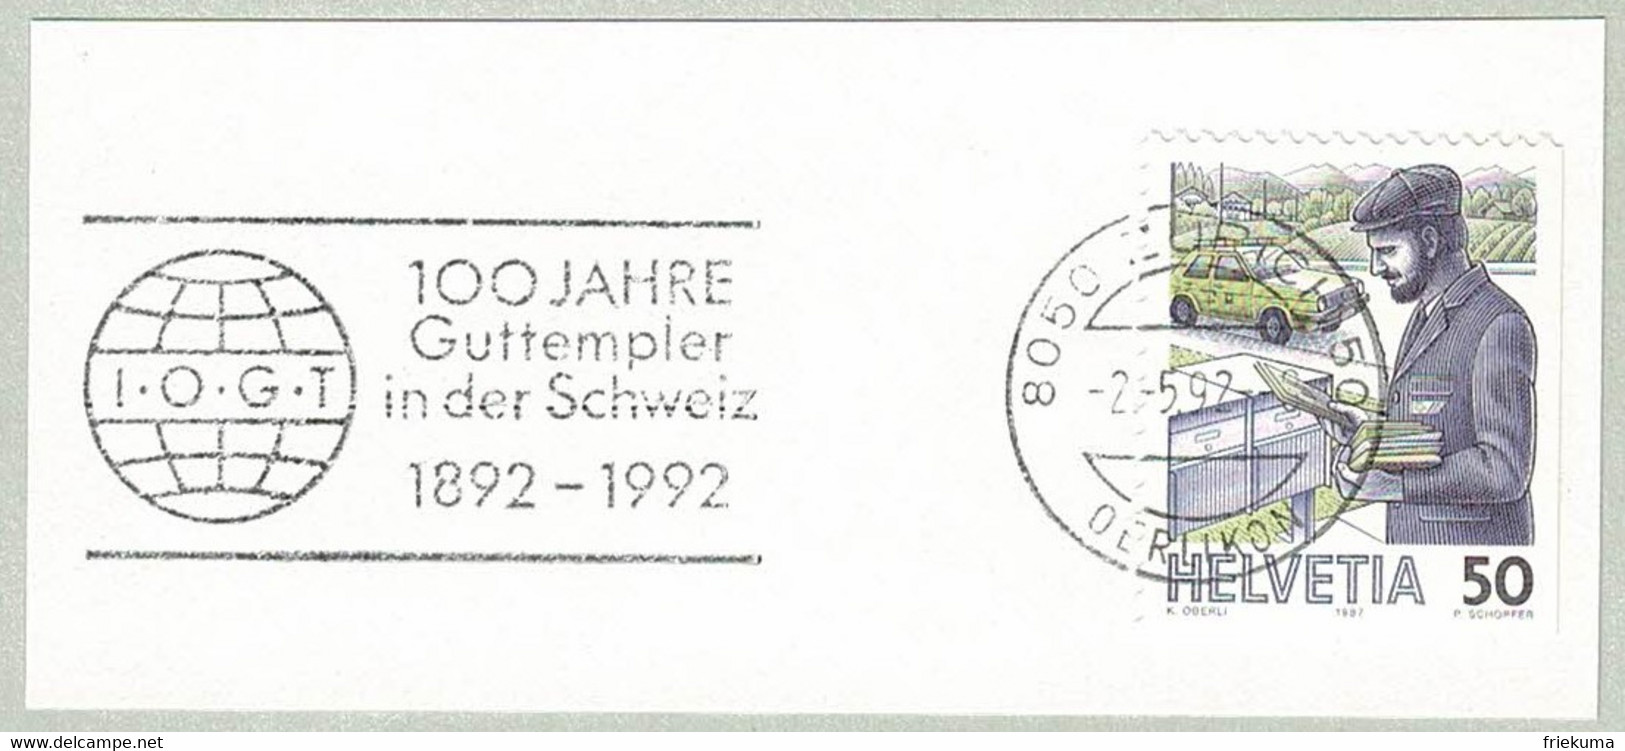 Schweiz / Helvetia 1992, Flaggenstempel Guttempler Zürich, Abstinenz, Alkohol, Drogen, Good Templars - Drugs